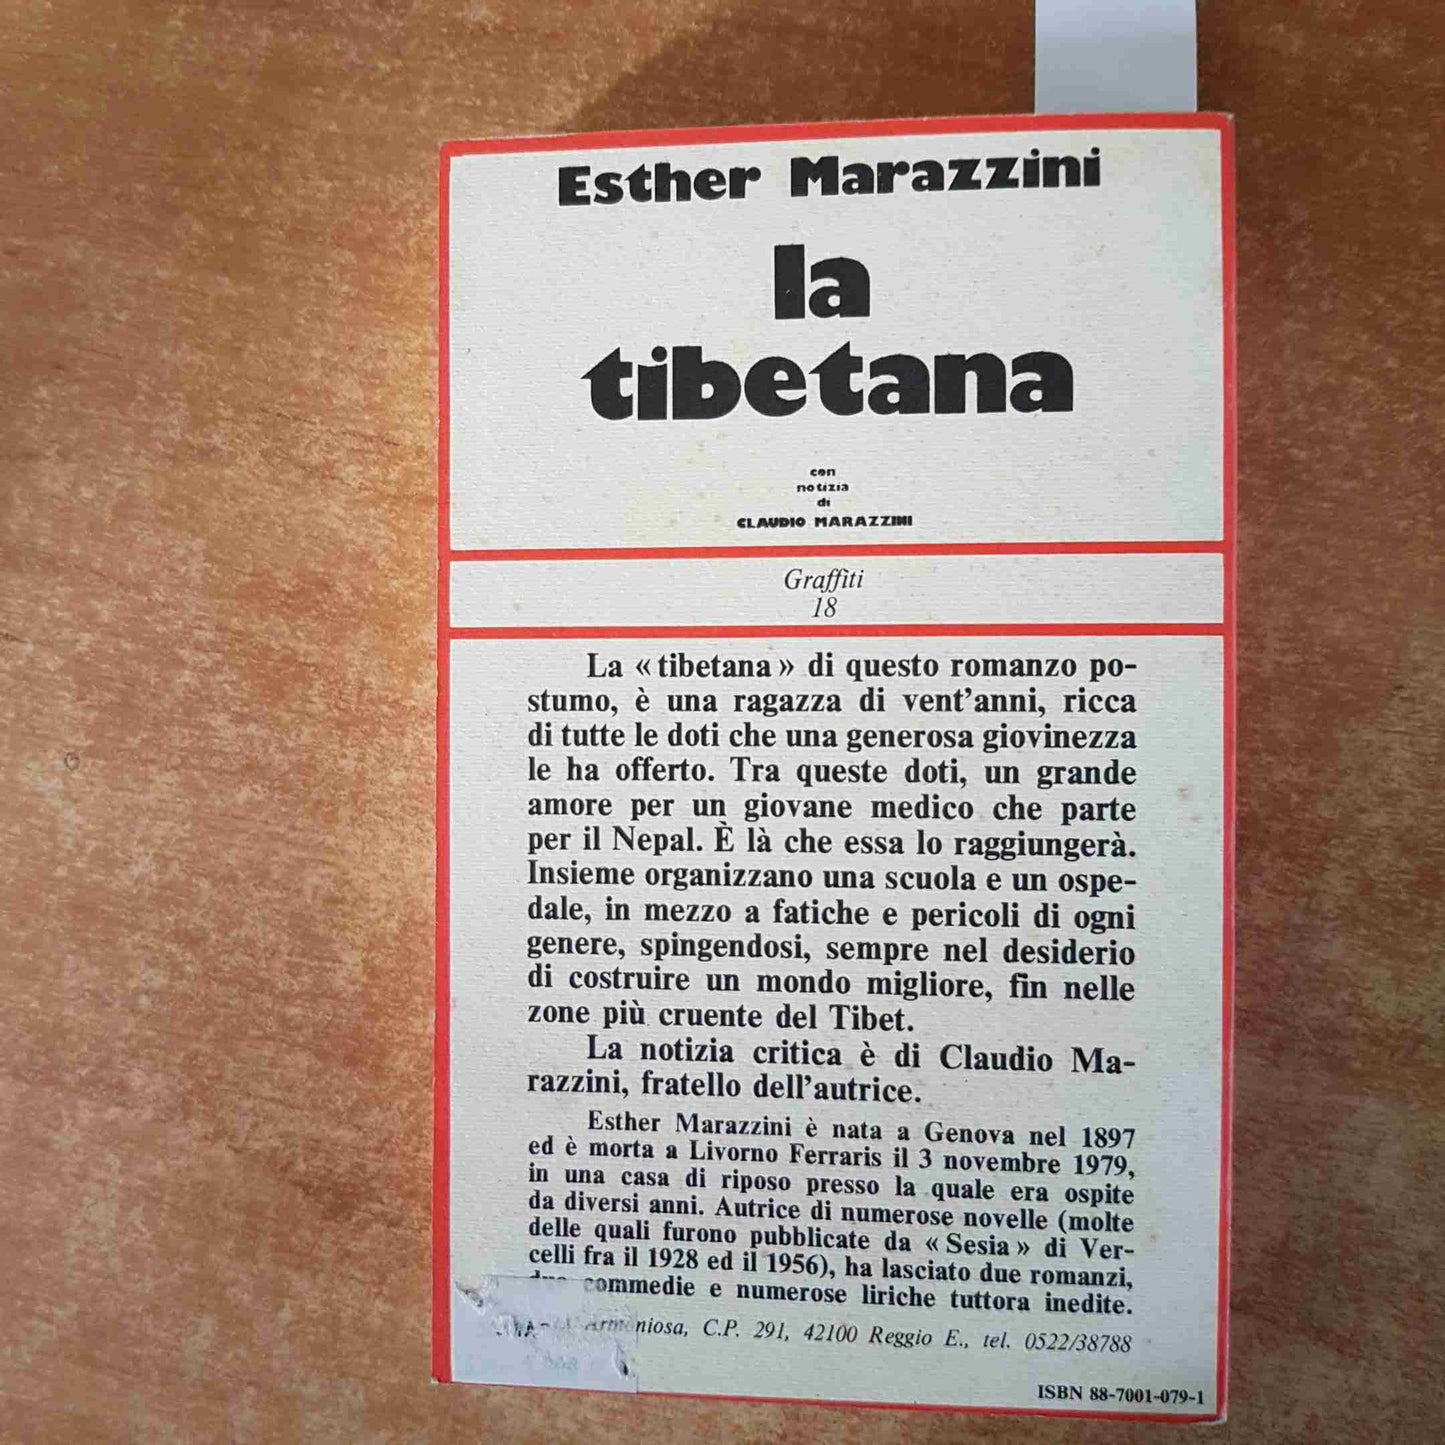 ESTHER MARAZZINI LA TIBETANA storia di una donna 1981 CITTA' ARMONIOSA 1°ediz.